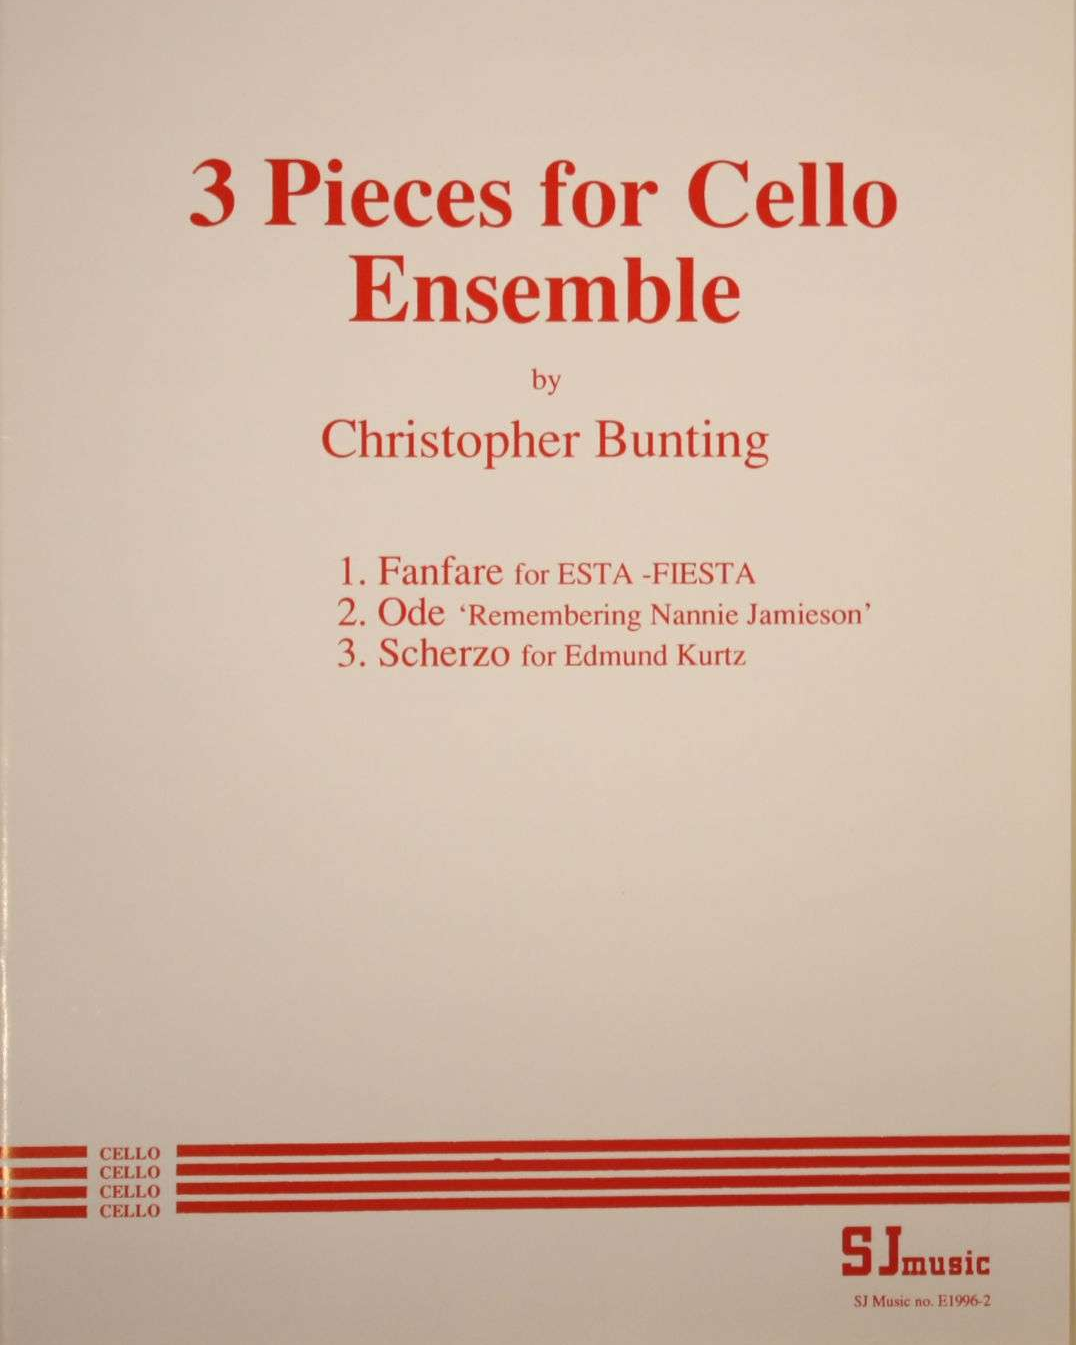 3 Pieces for Cello Ensemble